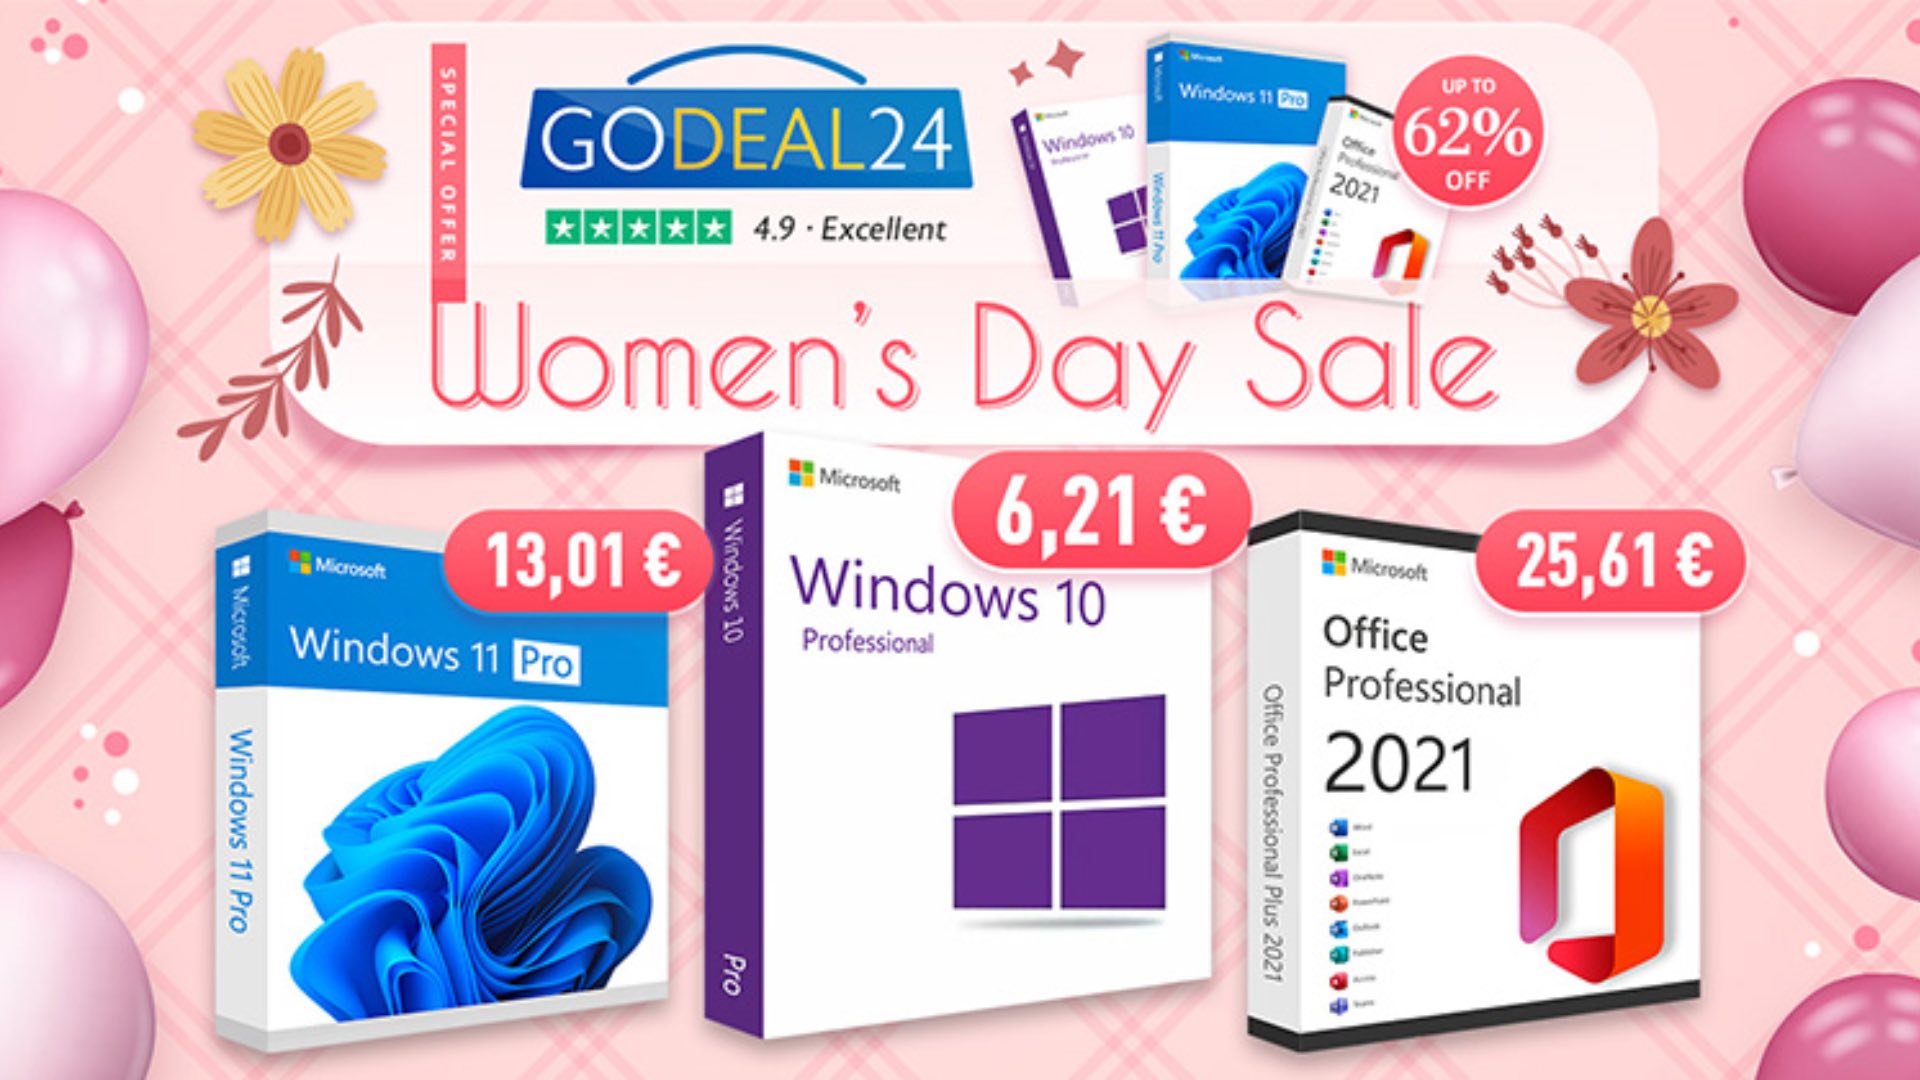 Por el Día de la Mujer, regala Windows 10 y Office a precio de saldo! -  